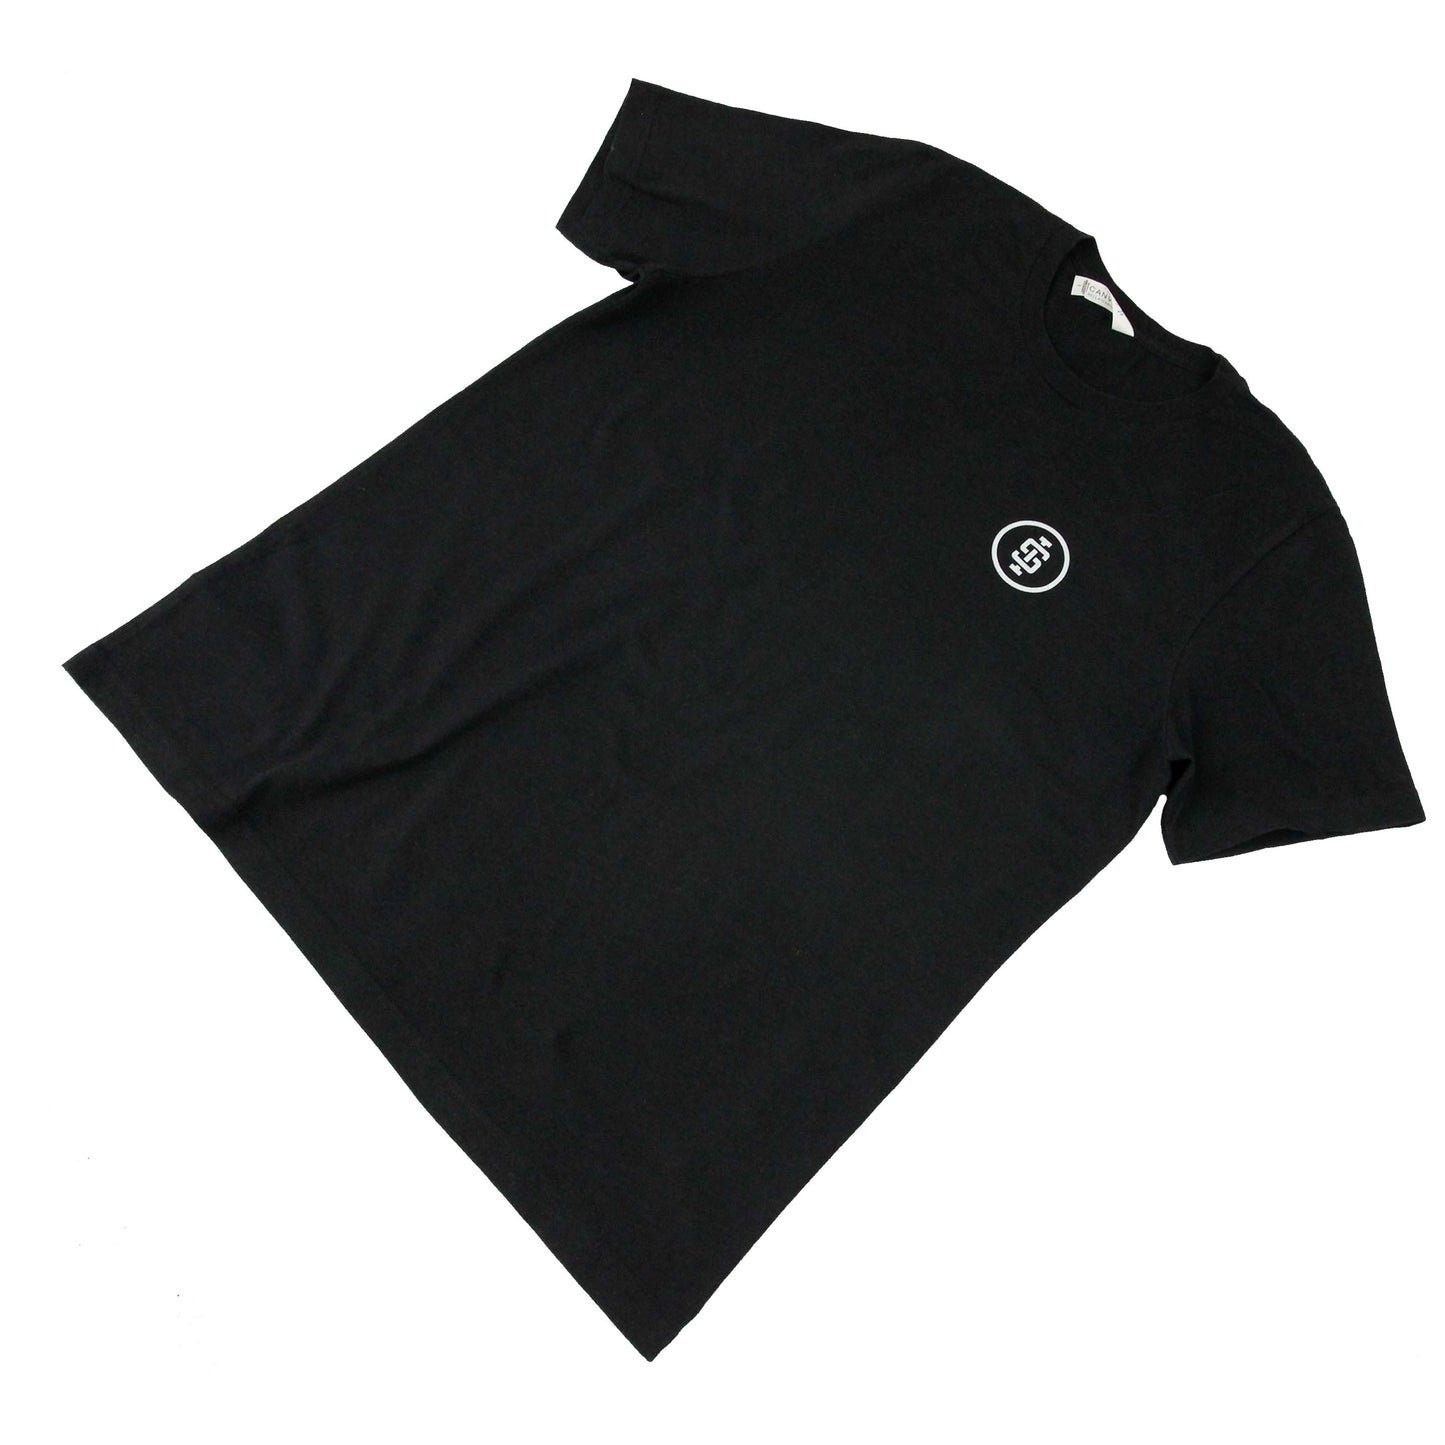 'Original Crew' powerlifting shirt | Iron Strong Apparel